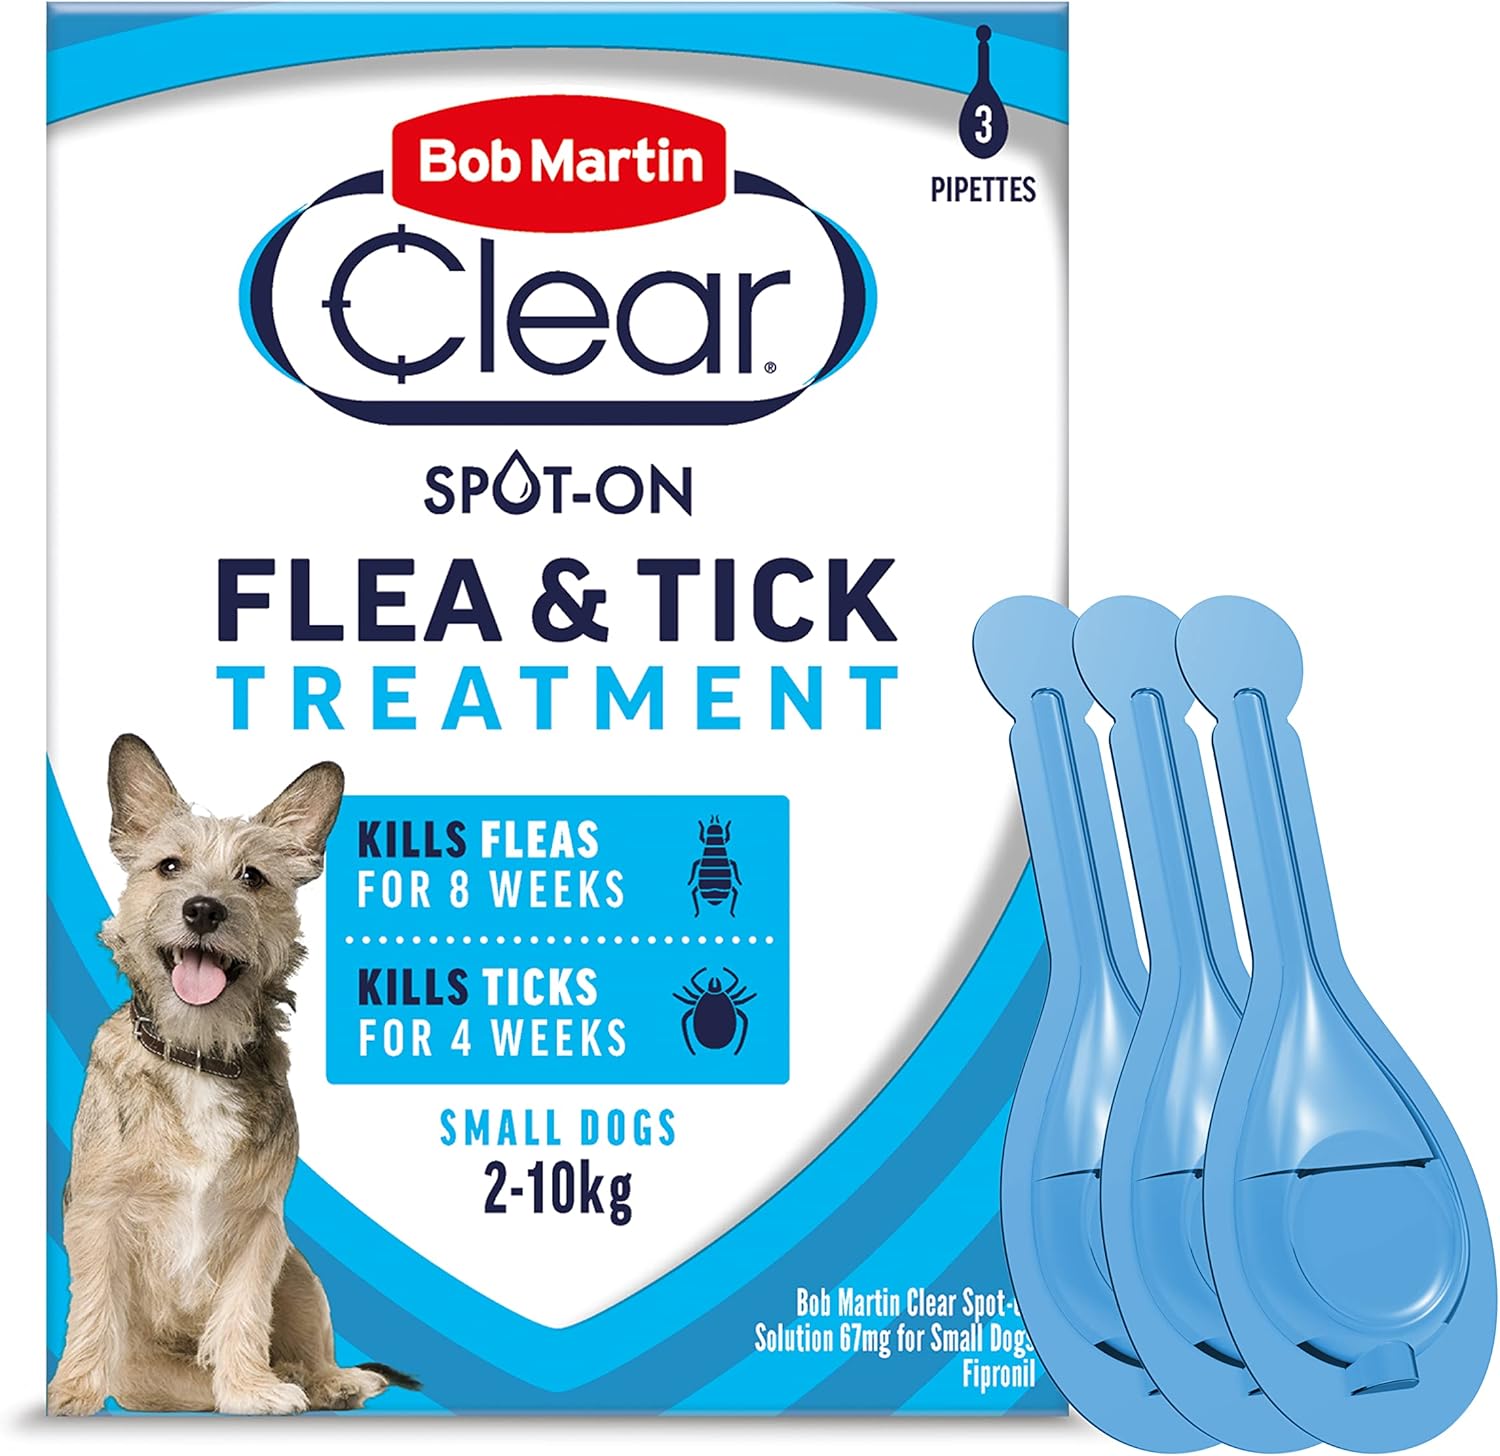 Bob Martin Clear Spot On Flea Treatment for Small Dogs (2-10kg) - Kills Fleas & Ticks (3 Pipettes)?K0813